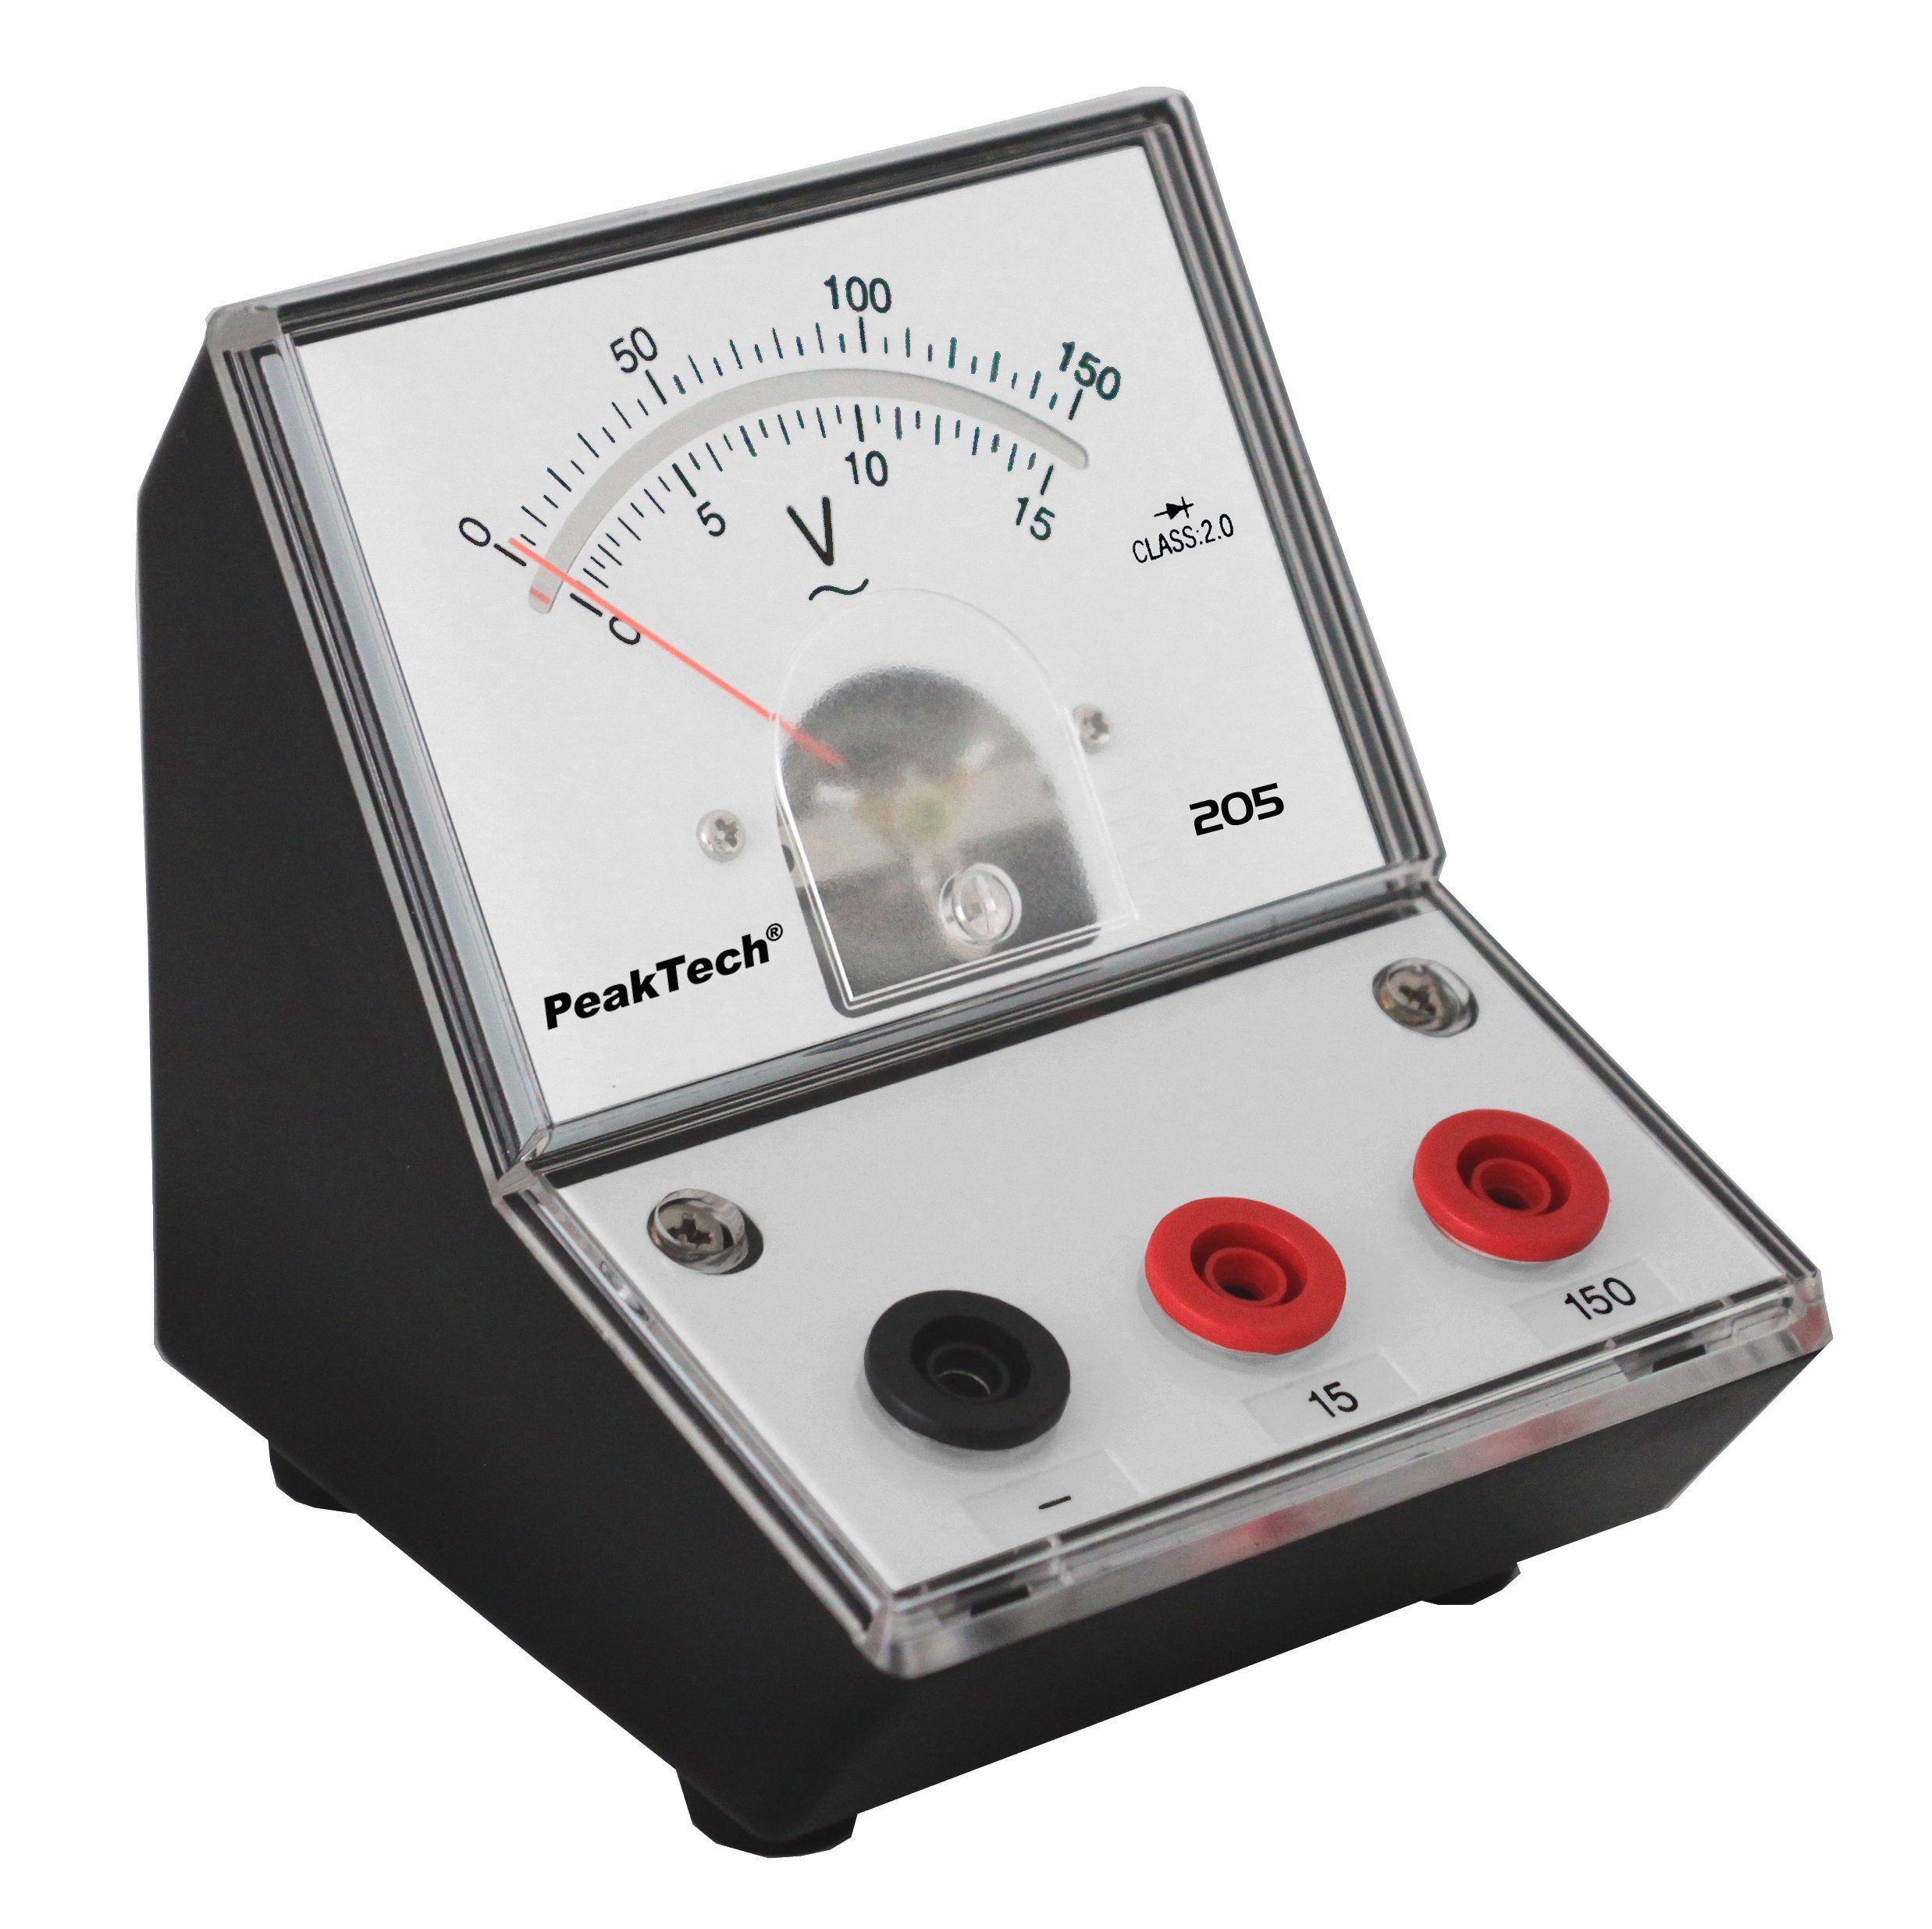 PeakTech PeakTech Spannungsprüfer 0 - P V 150 - V 205-11» (ED-205 15 15-15), St) (1 Analog-Voltmeter AC